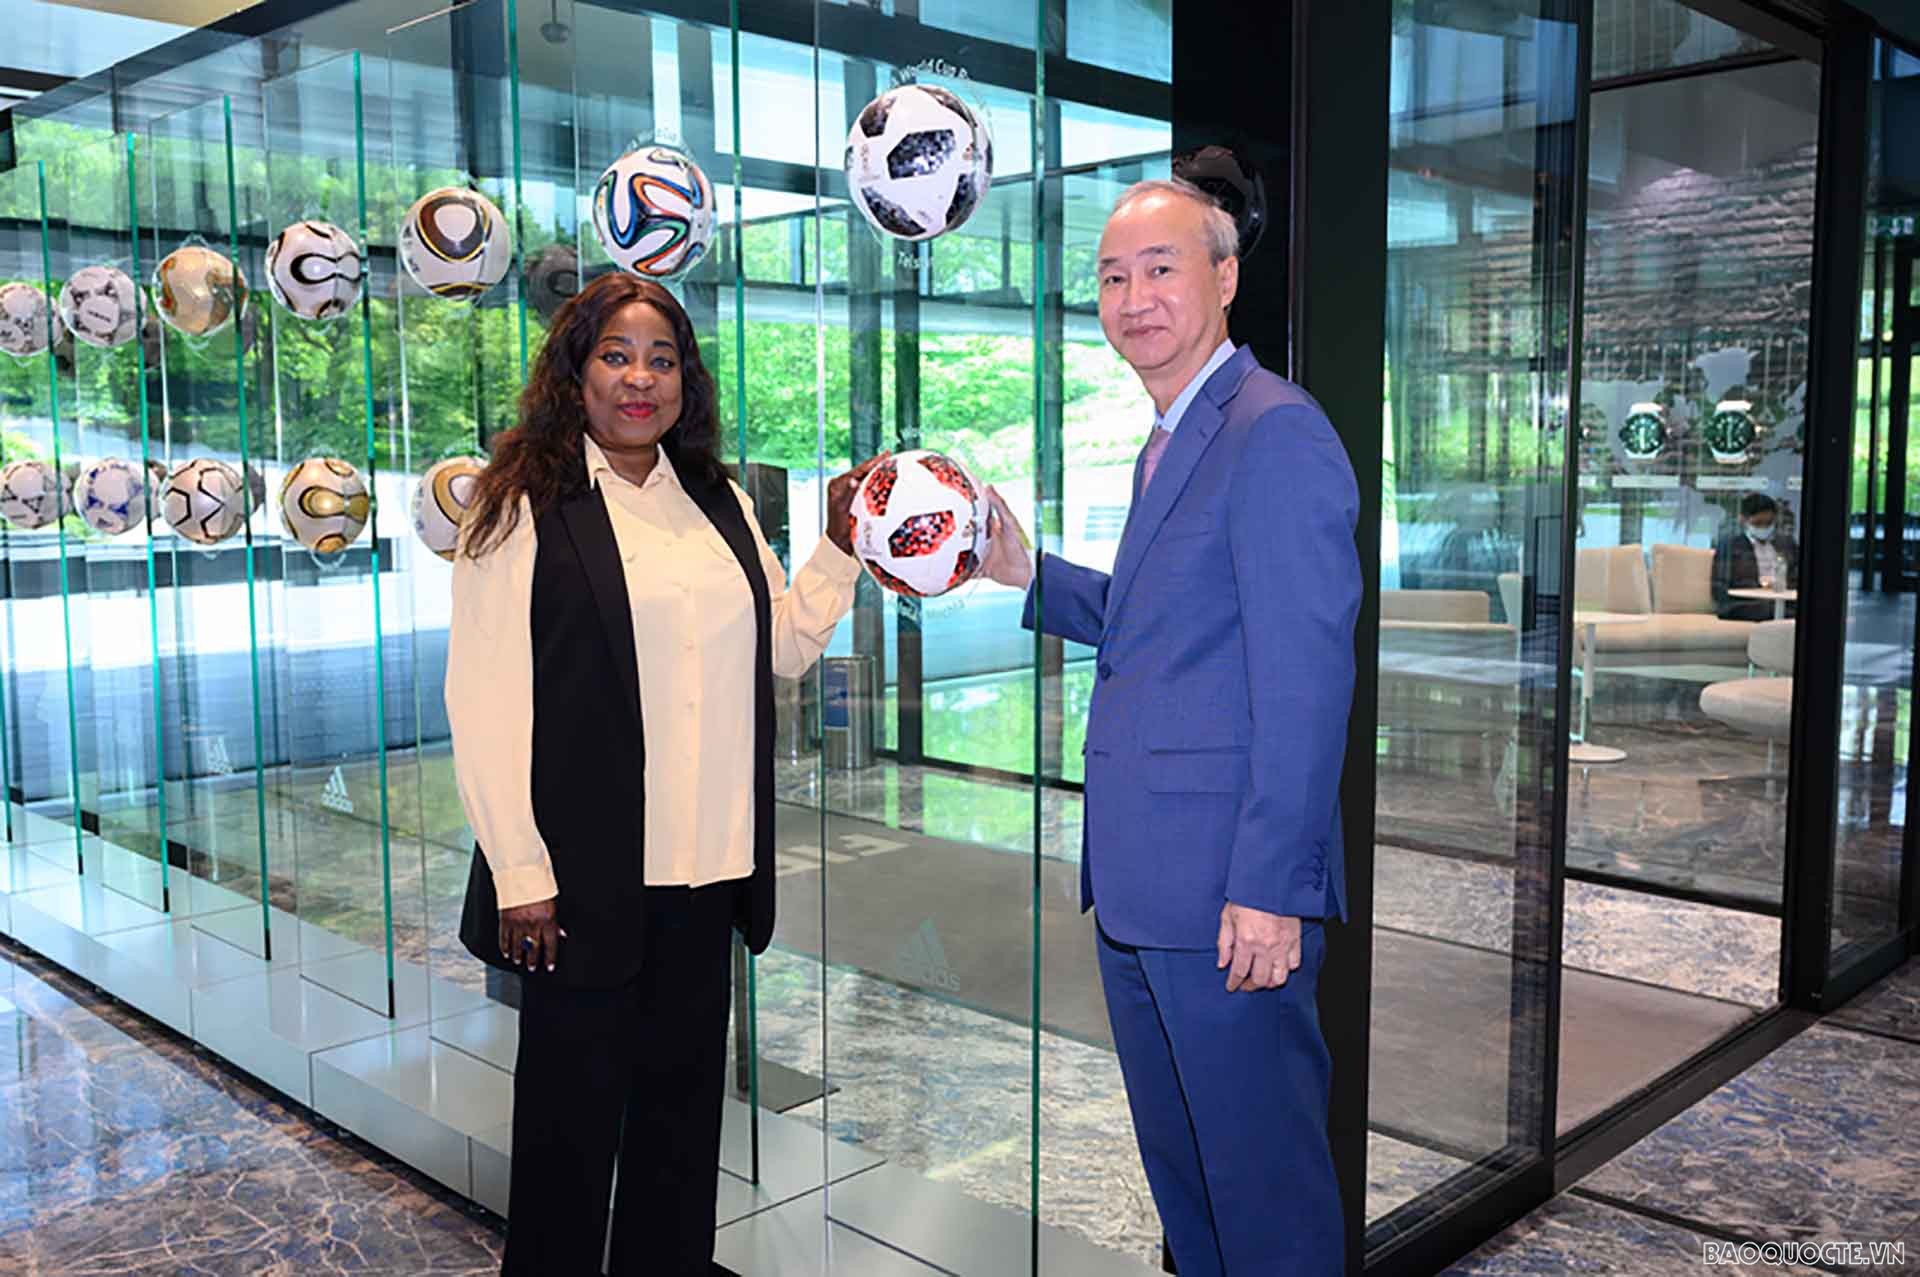 Tổng thư ký FIFA Fatma Samoura và Đại sứ Phùng Thế Long tại trụ sở Liên đoàn Bóng đá thế giới (FIFA)